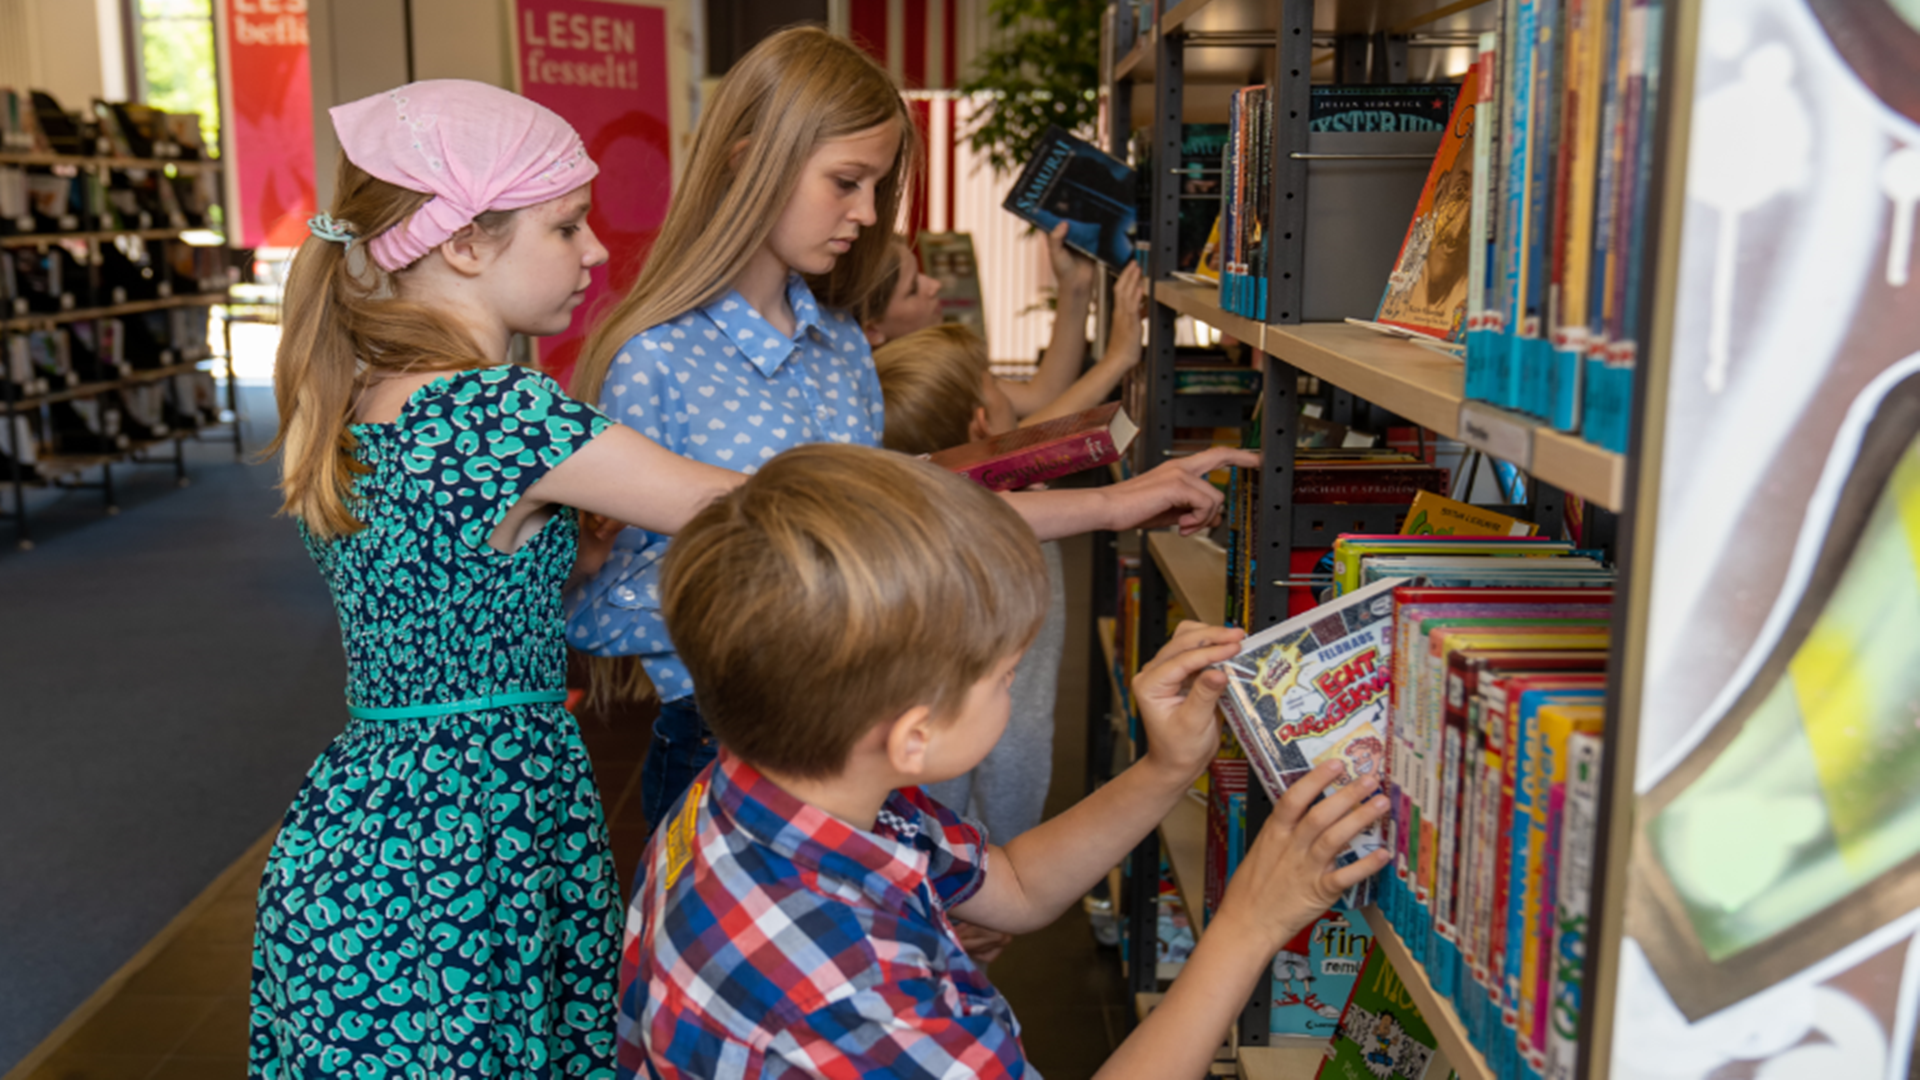 Drei Kinder stehen vor einem Bücherregal und suchen nach Büchern.